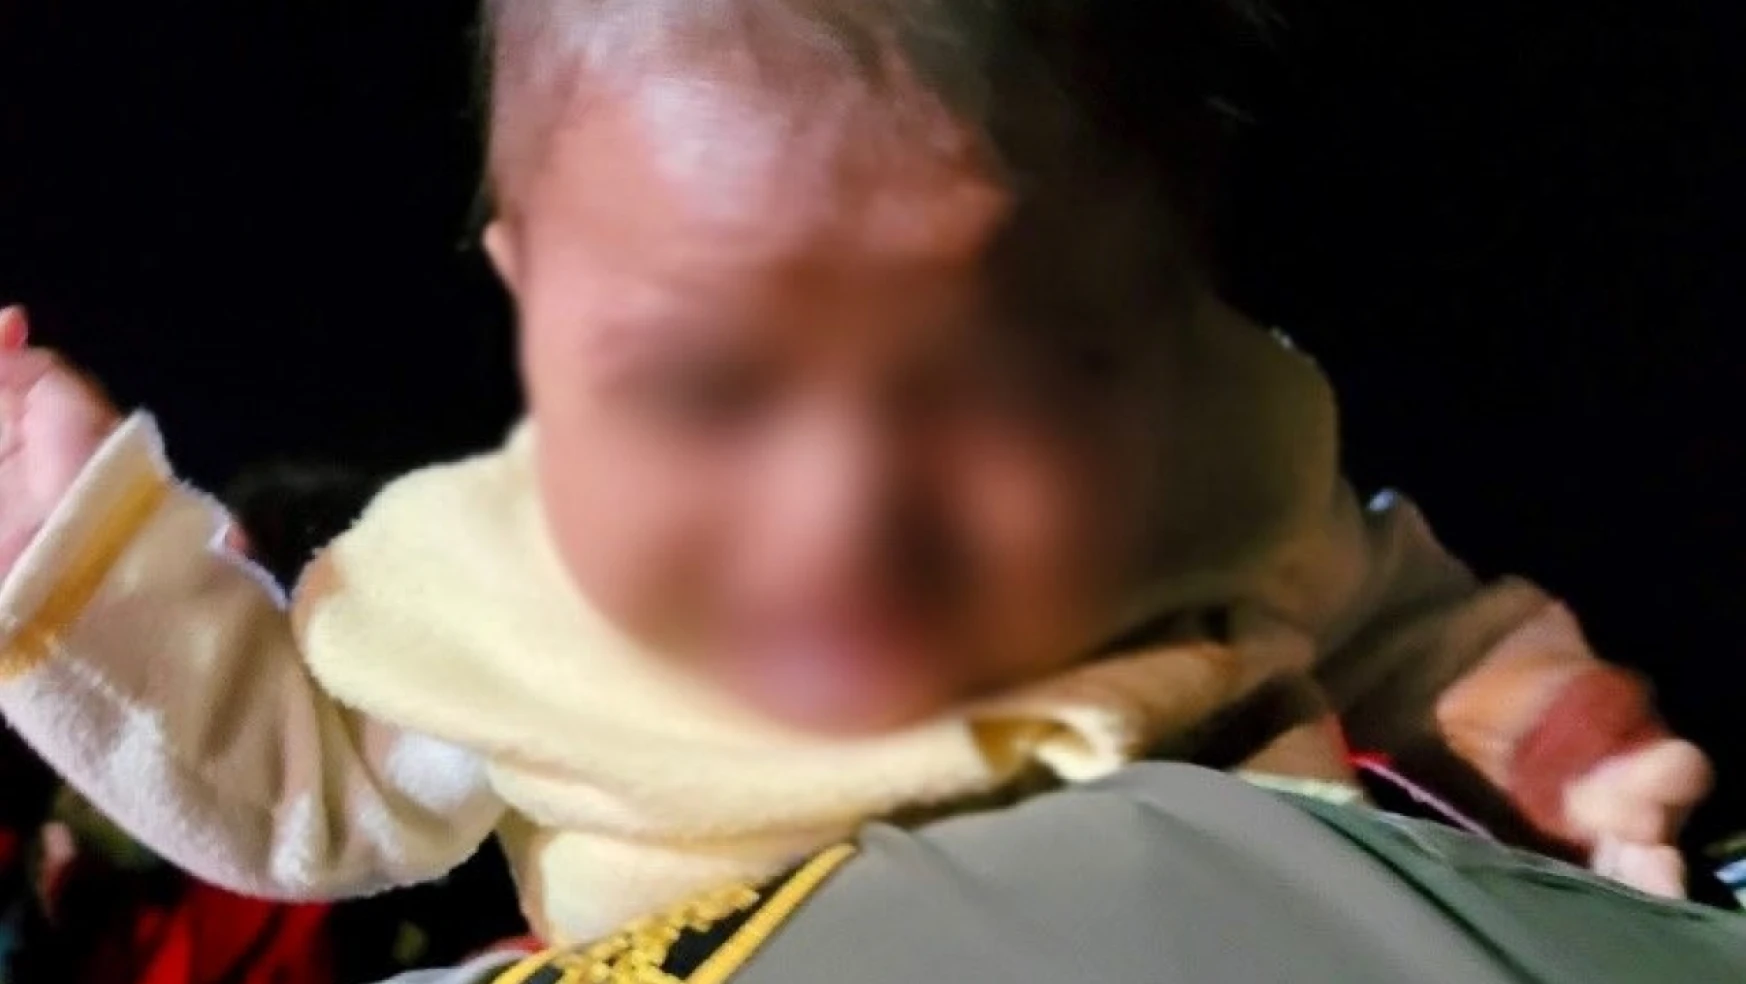 ABD-Meksika sınırında terk edilmiş bebek bulundu